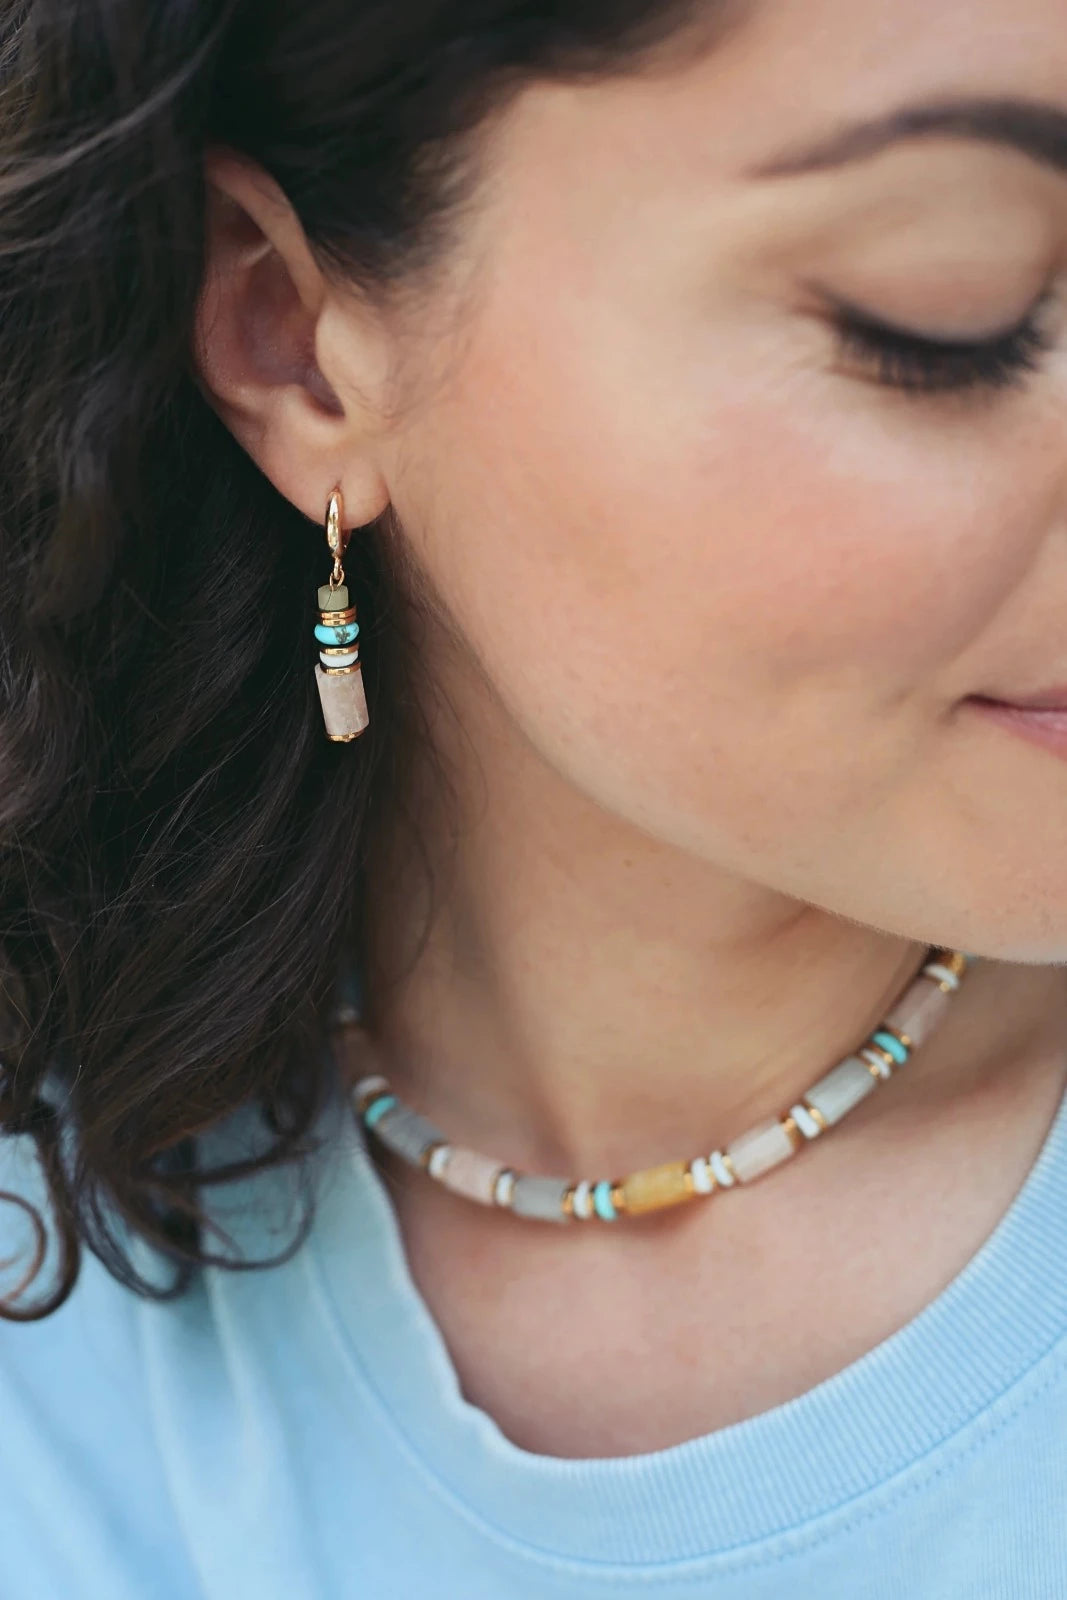 Femme brune portant de fines boucles d'oreilles pendantes colorées pastel et un collier aux grosses pierres pastel